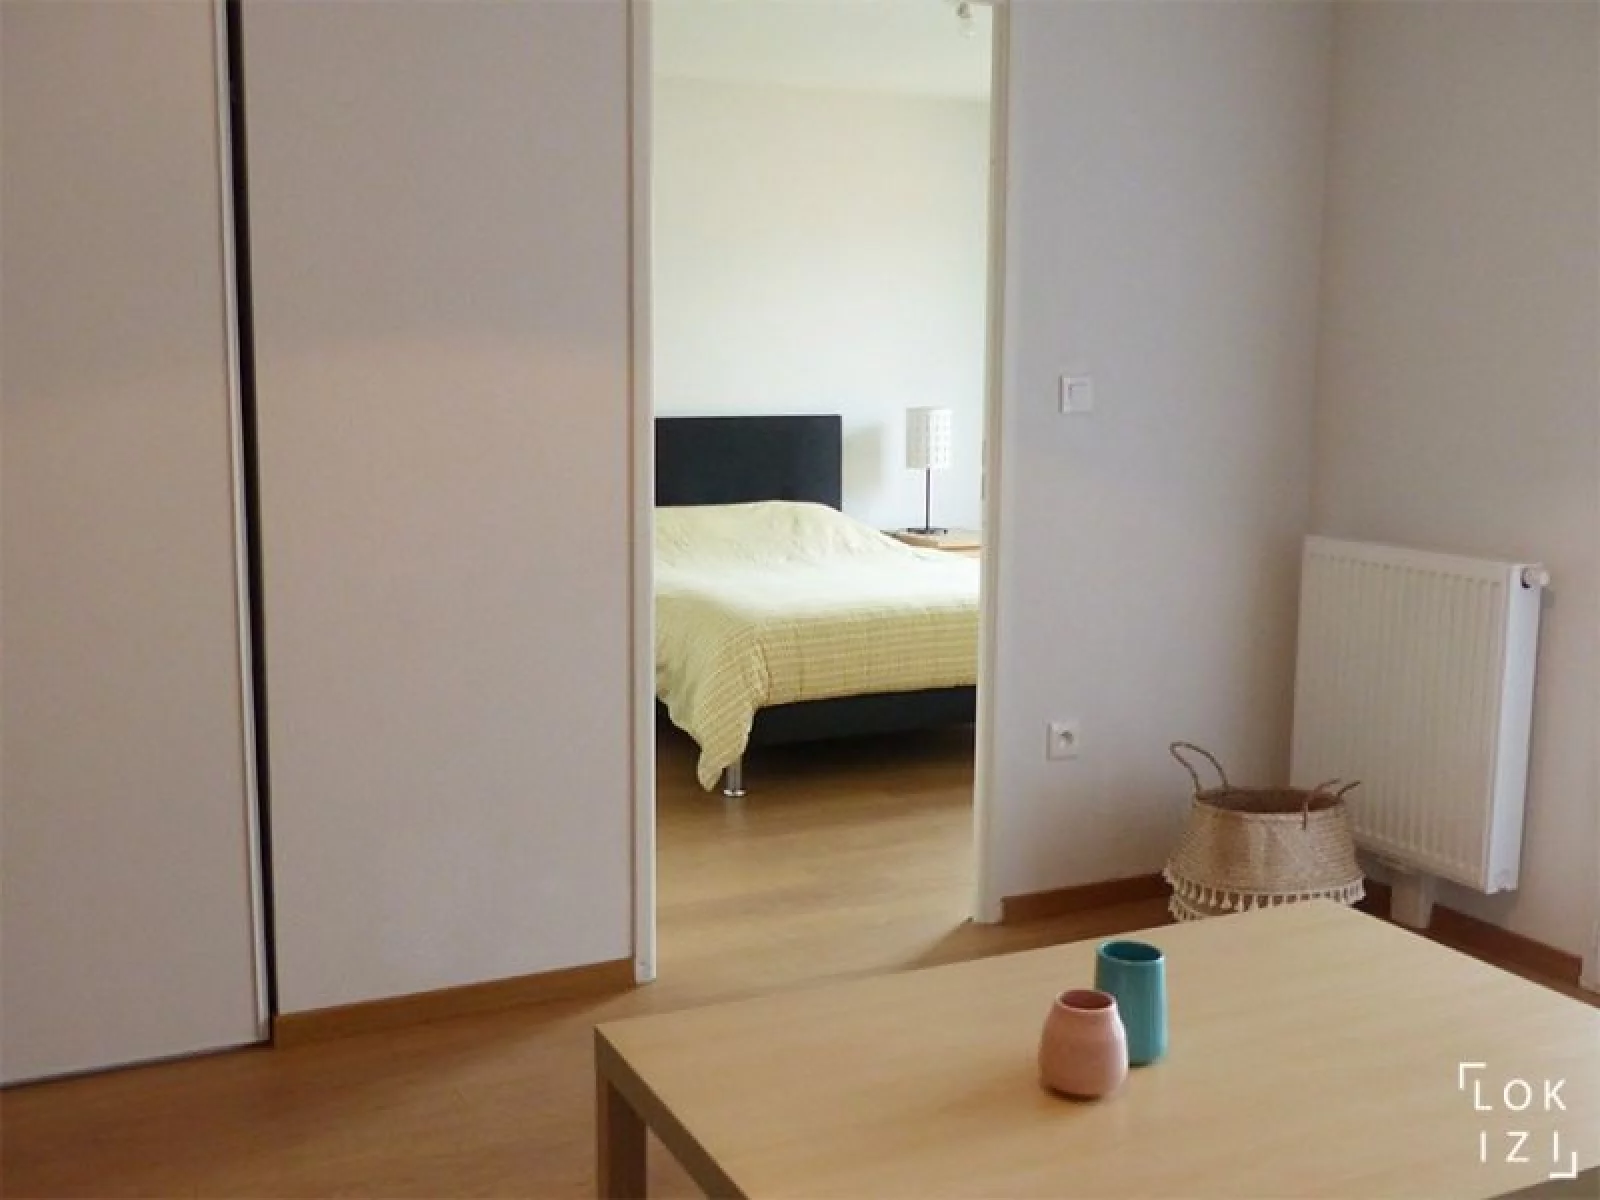 Copie de Location appartement meublé 2 pièces 42m²  (Bordeaux - Bacalan)